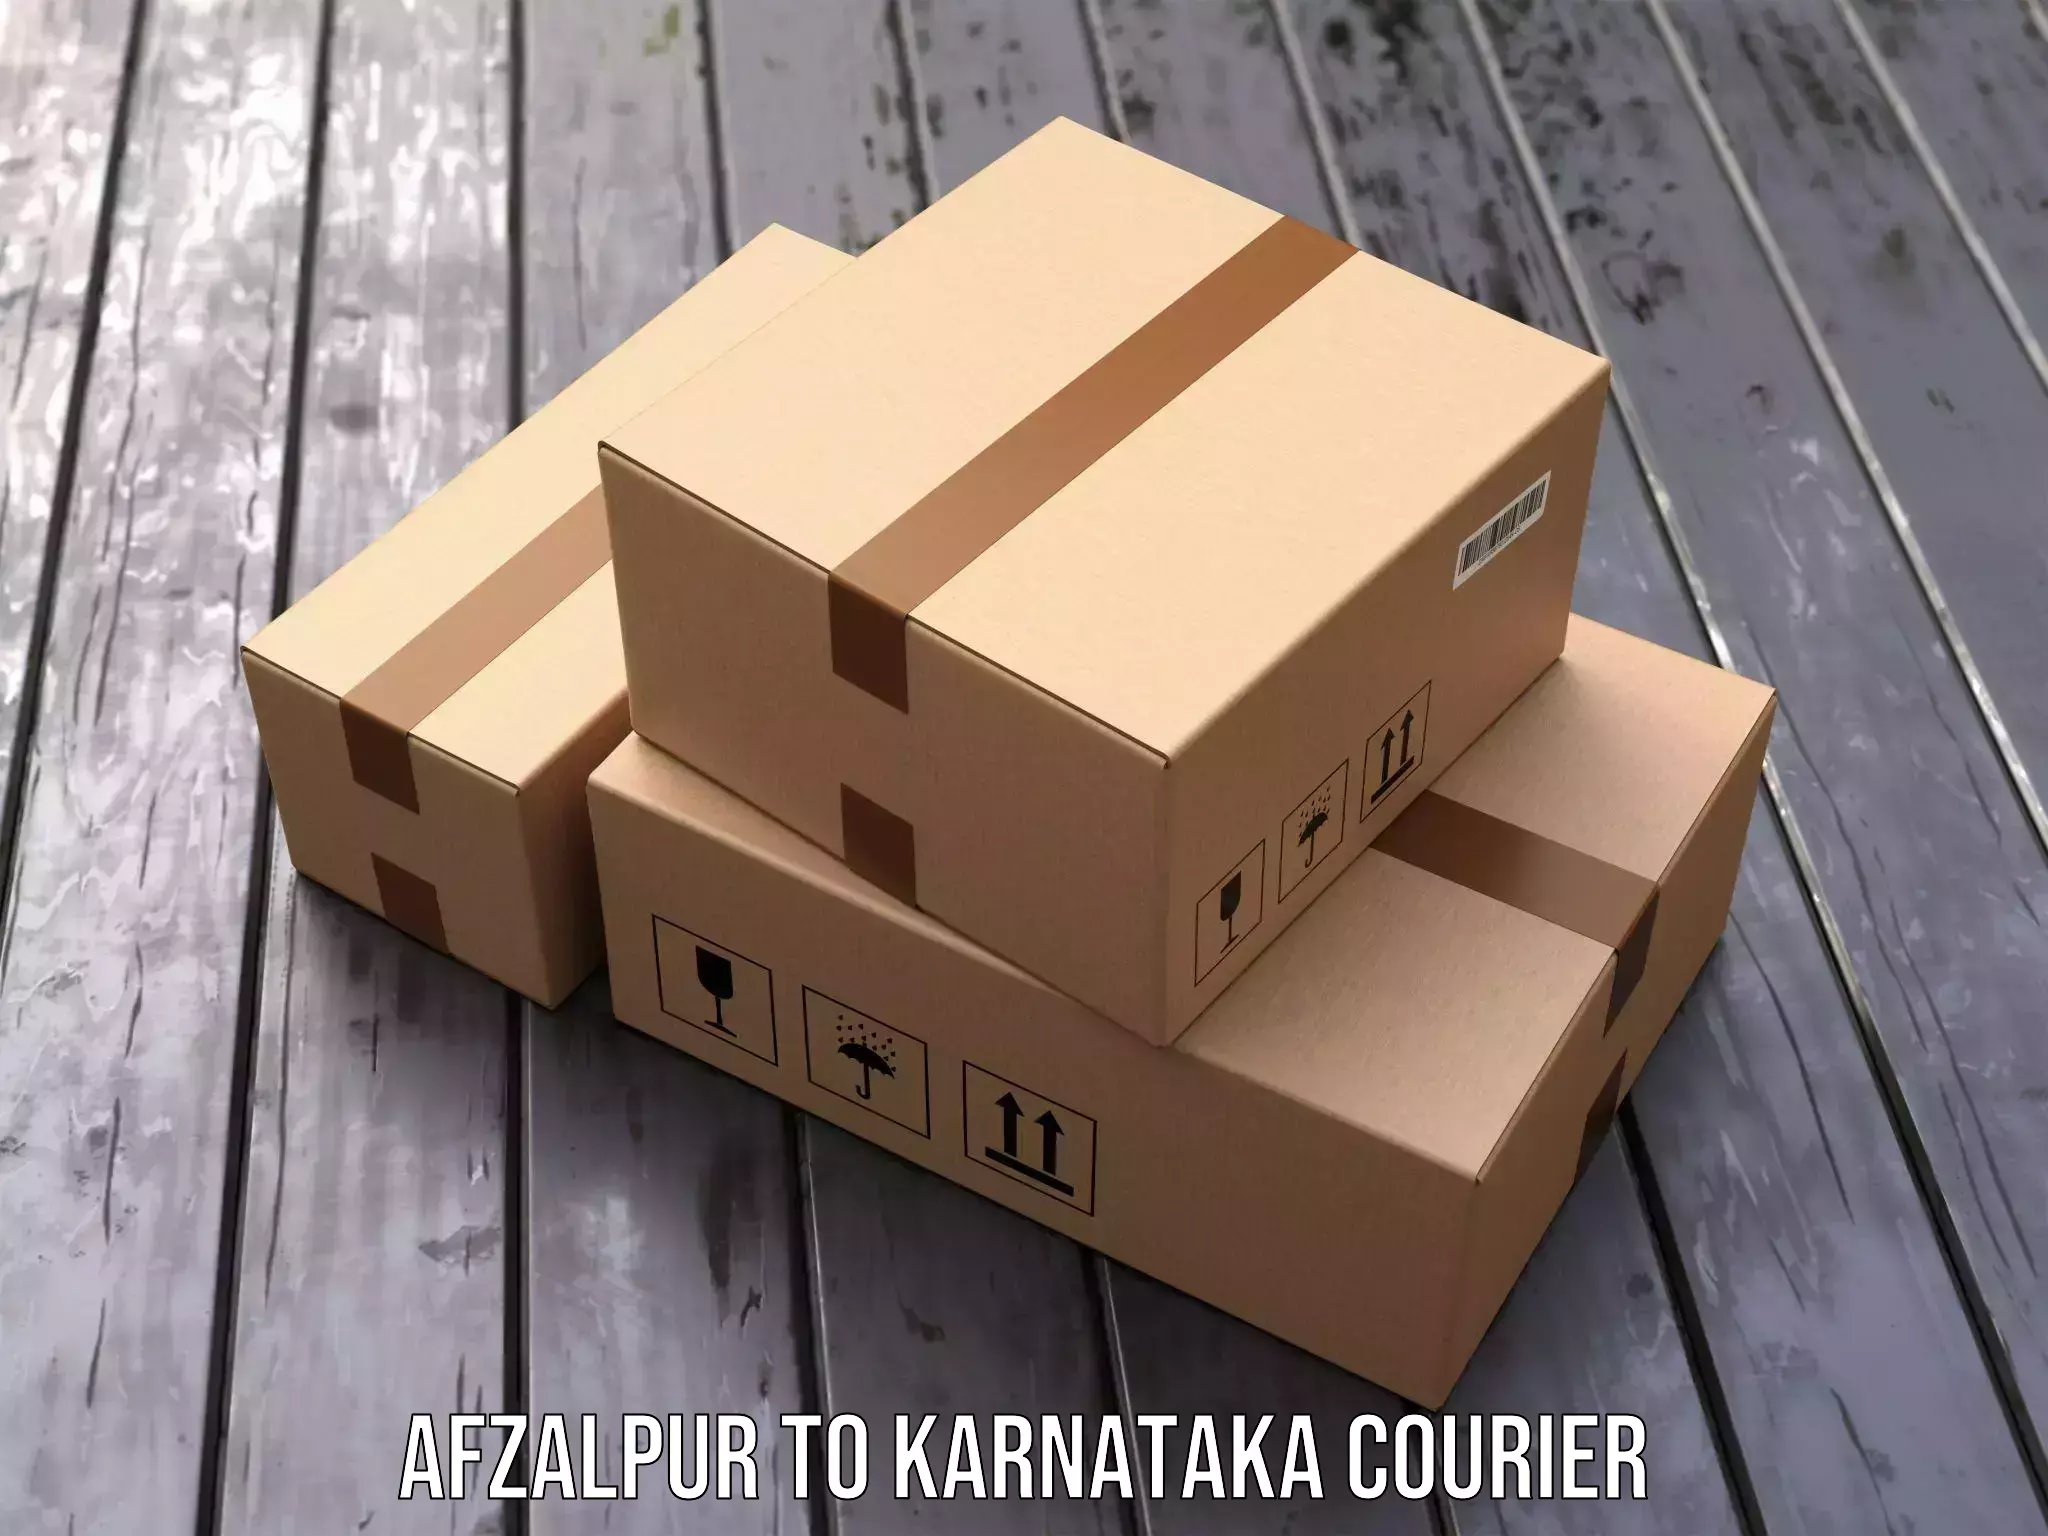 User-friendly courier app Afzalpur to Srinivaspur